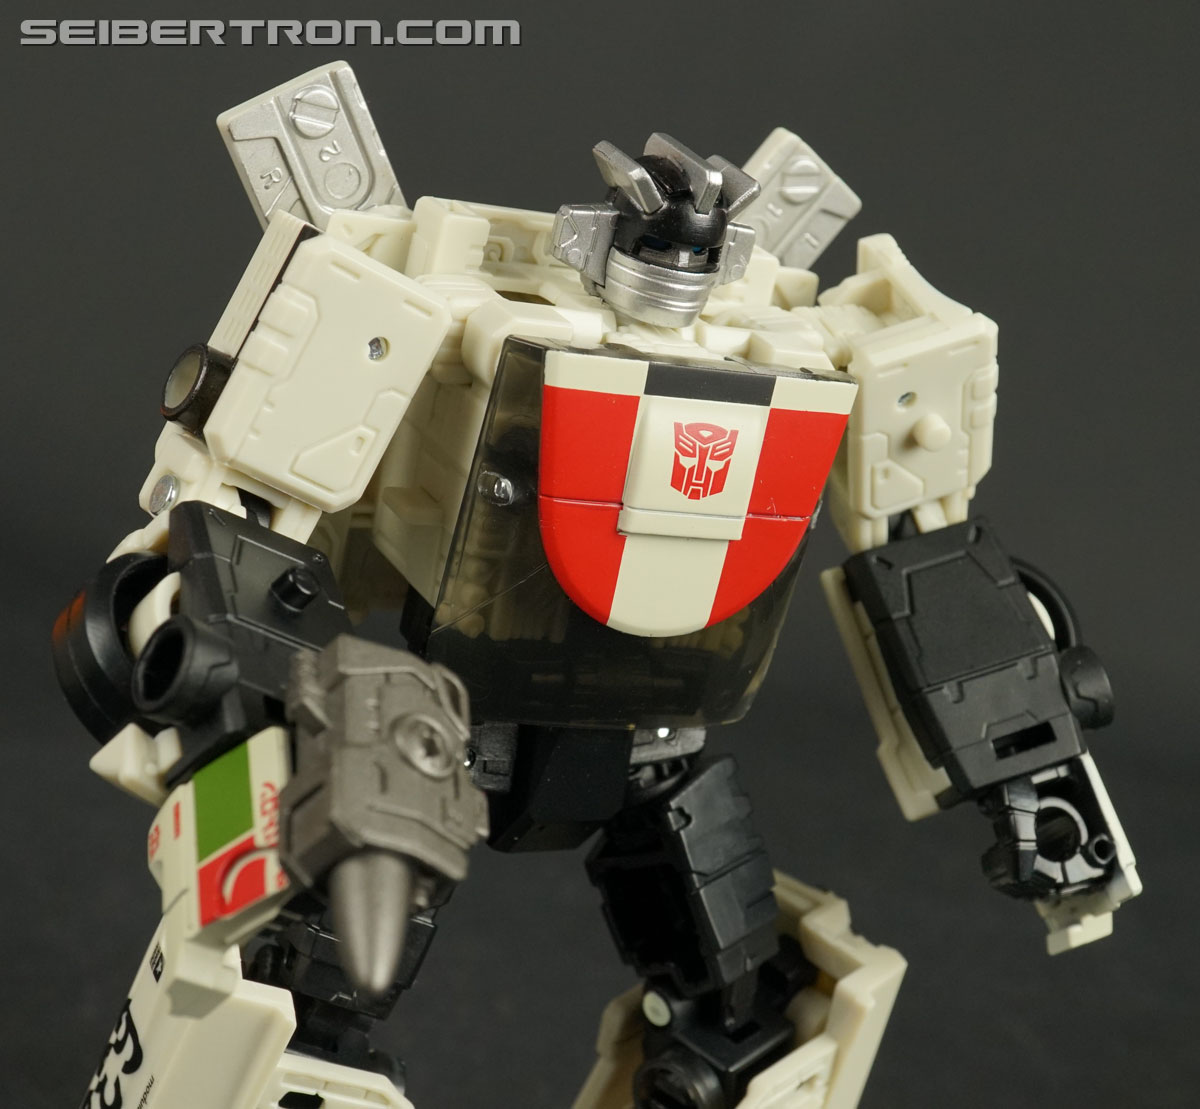 Transformers Siege Earthrise WHEELJACK Deluxe Class War For Cybertron NIB 